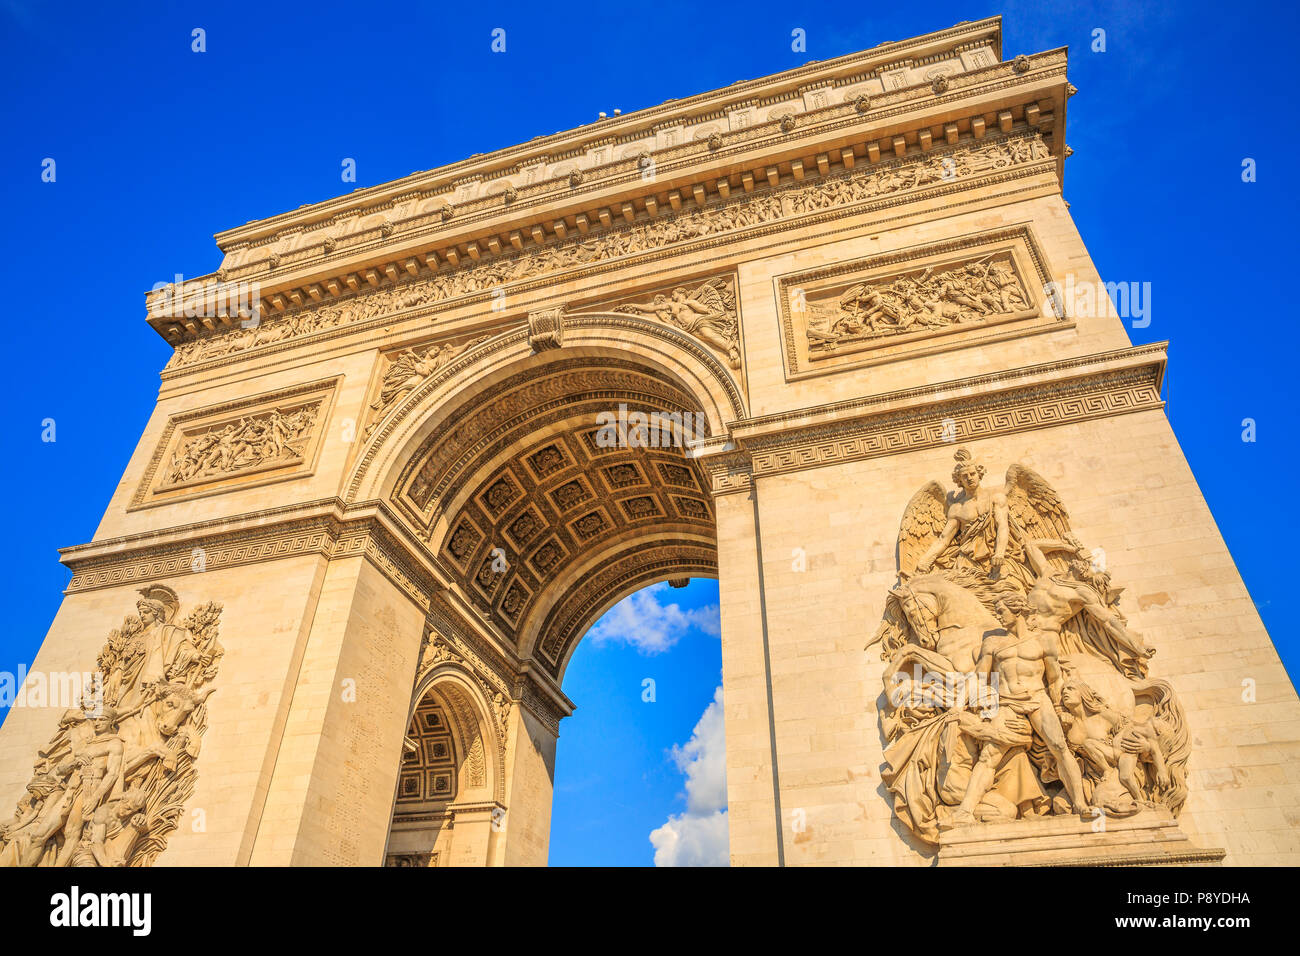 Vista dal basso del Arco di Trionfo al centro di Place Charles de Gaulle in una bella giornata di sole con cielo blu. Punto di riferimento popolare e famosa attrazione turistica a Parigi capitale della Francia in Europa. Foto Stock